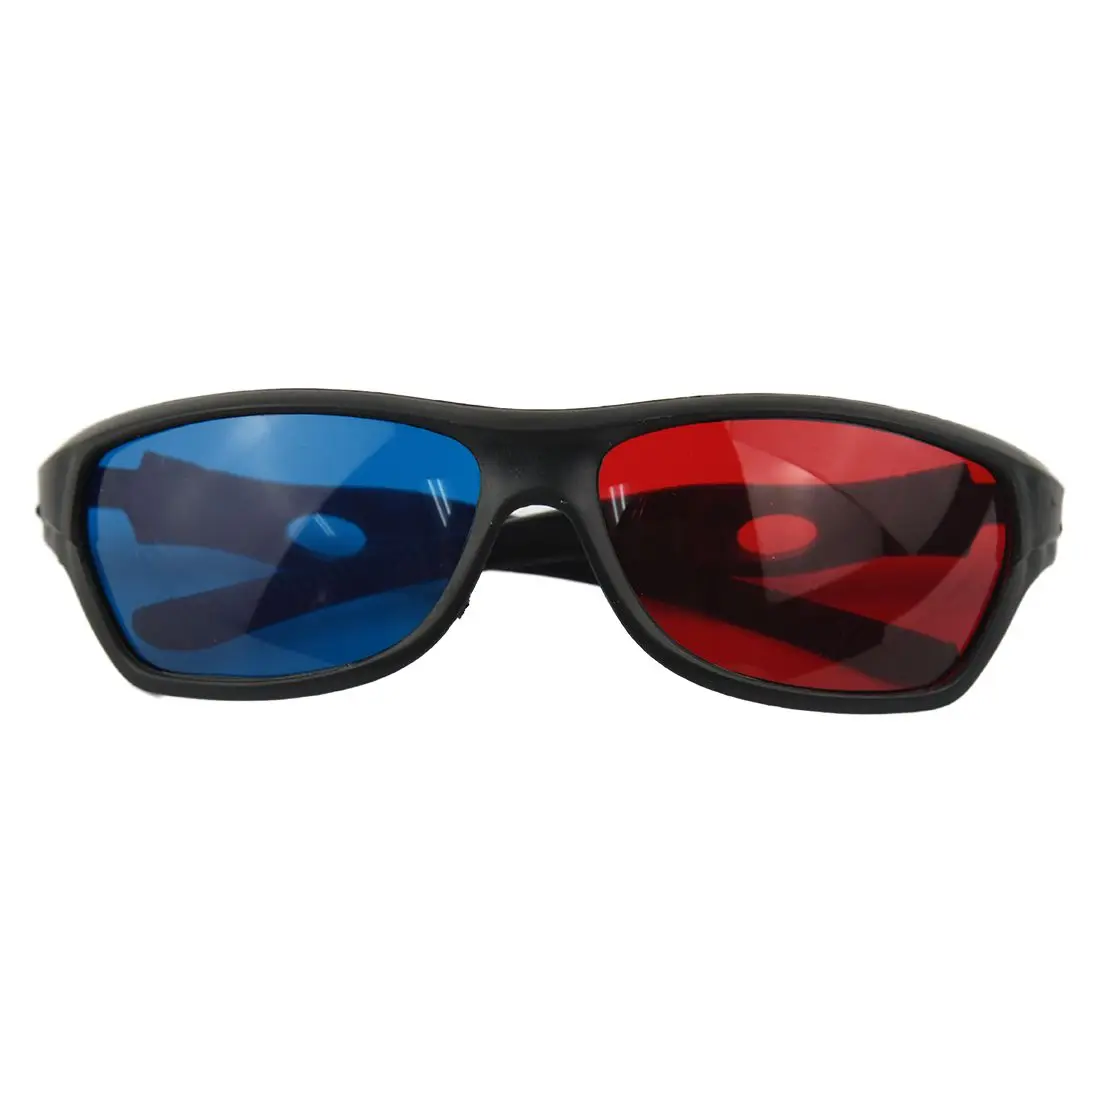 Fasdga красно-синий анаглиф простой стиль 3D очки 3D фильм игры (дополнительный стиль обновления)